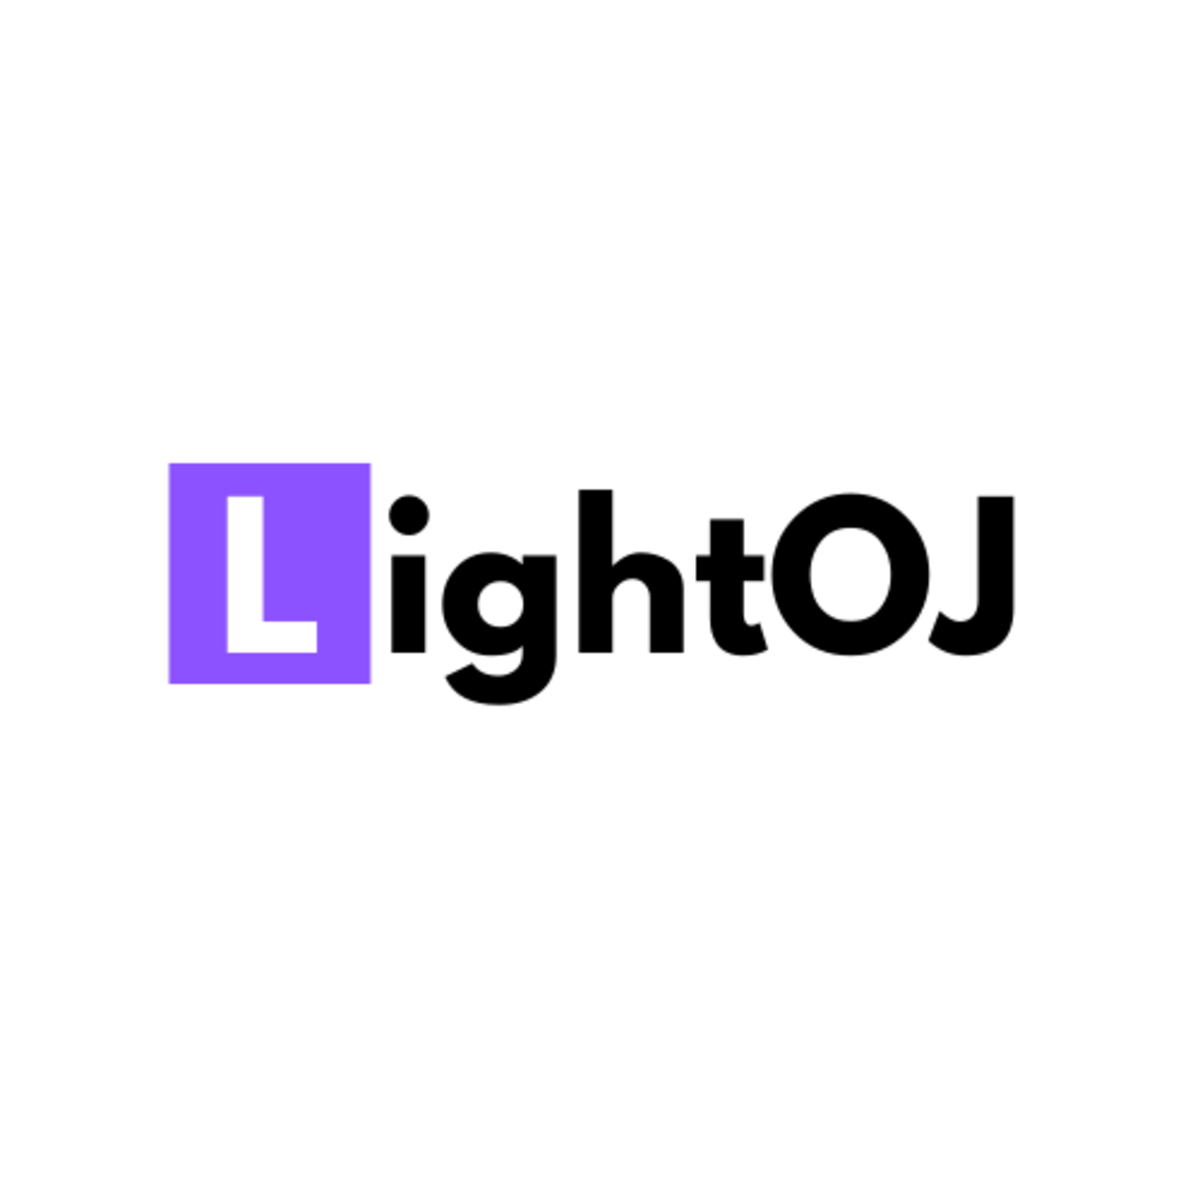 LightOJ Logo